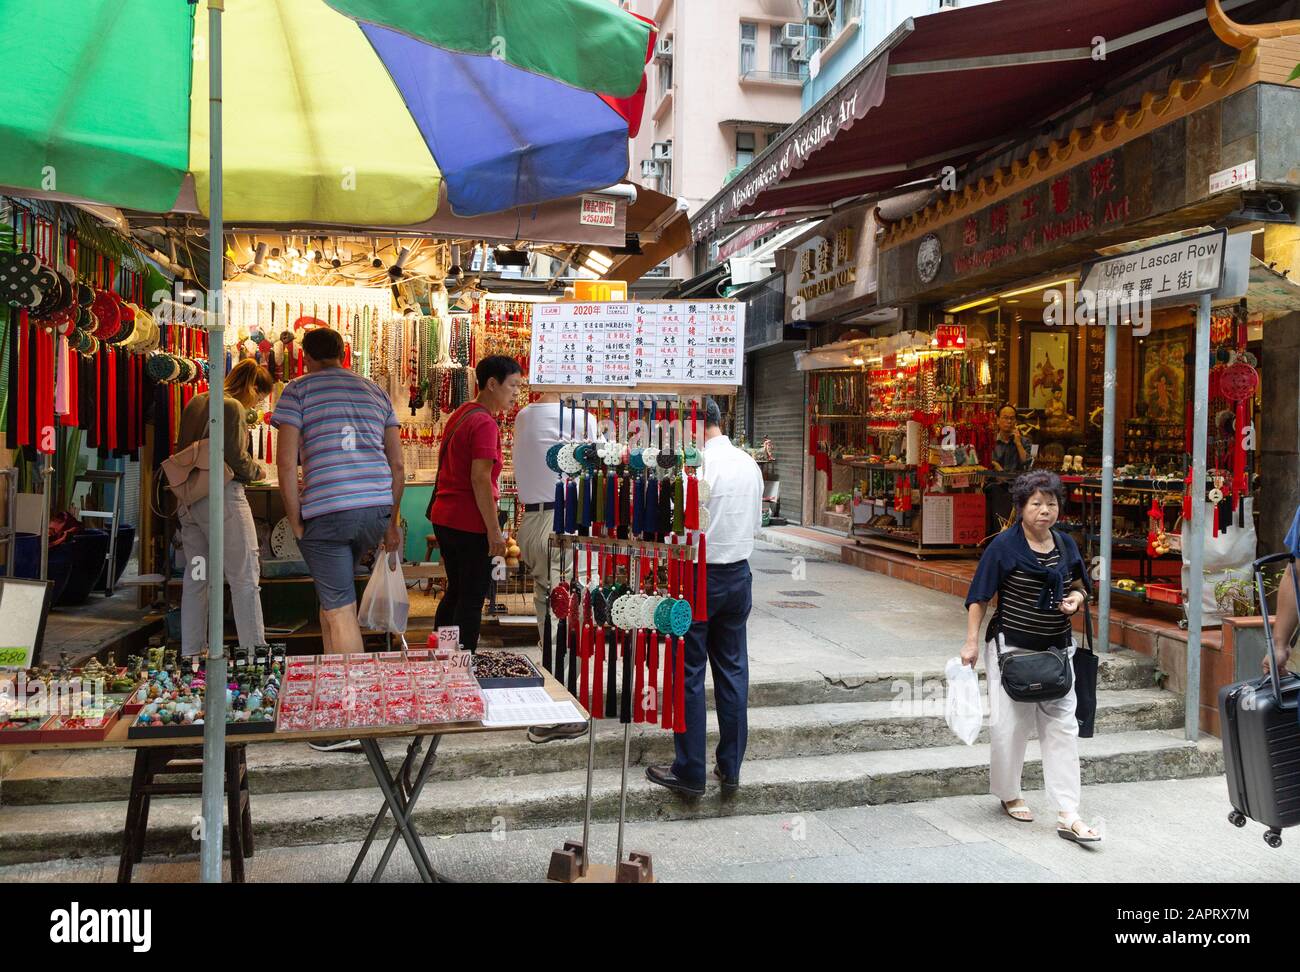 Lascar Row Hong Kong; People shopping among the antique stalls in Upper Lascar Row, Hong Kong Island, Hong Kong Asia Stock Photo